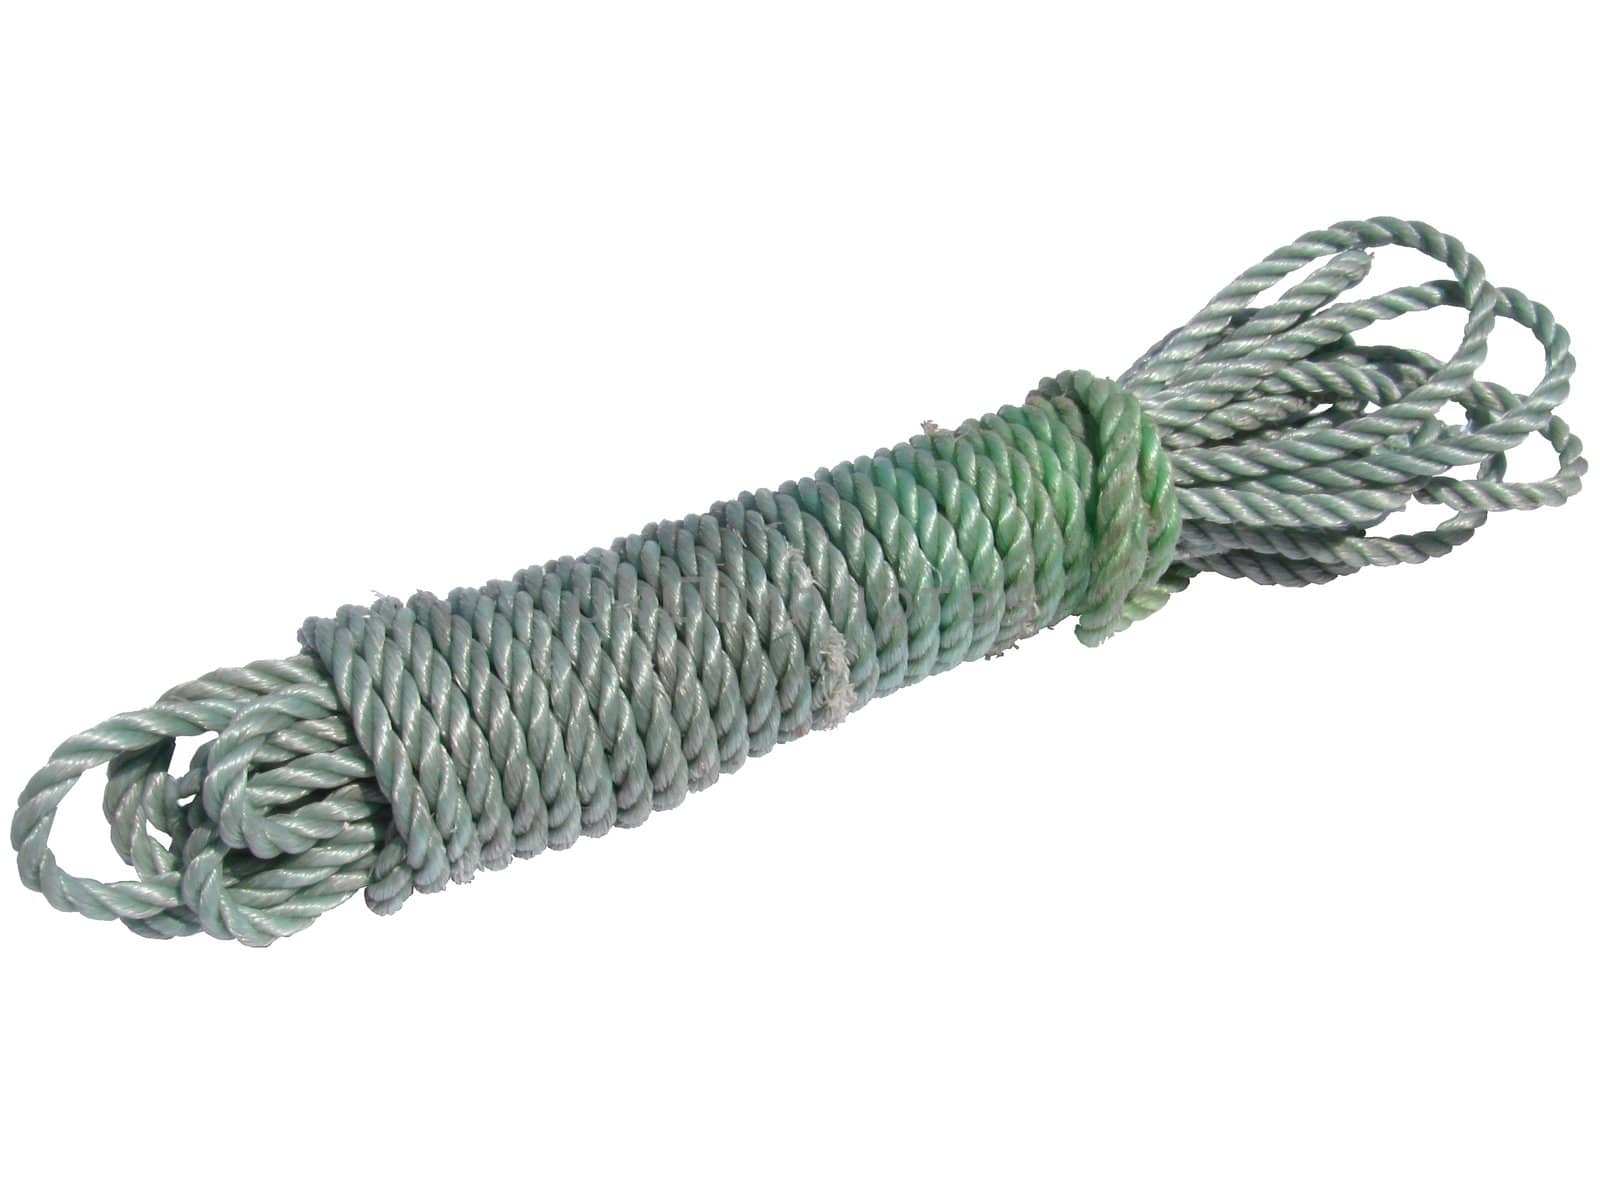 Image of old nylon bundled rope isolated on white background